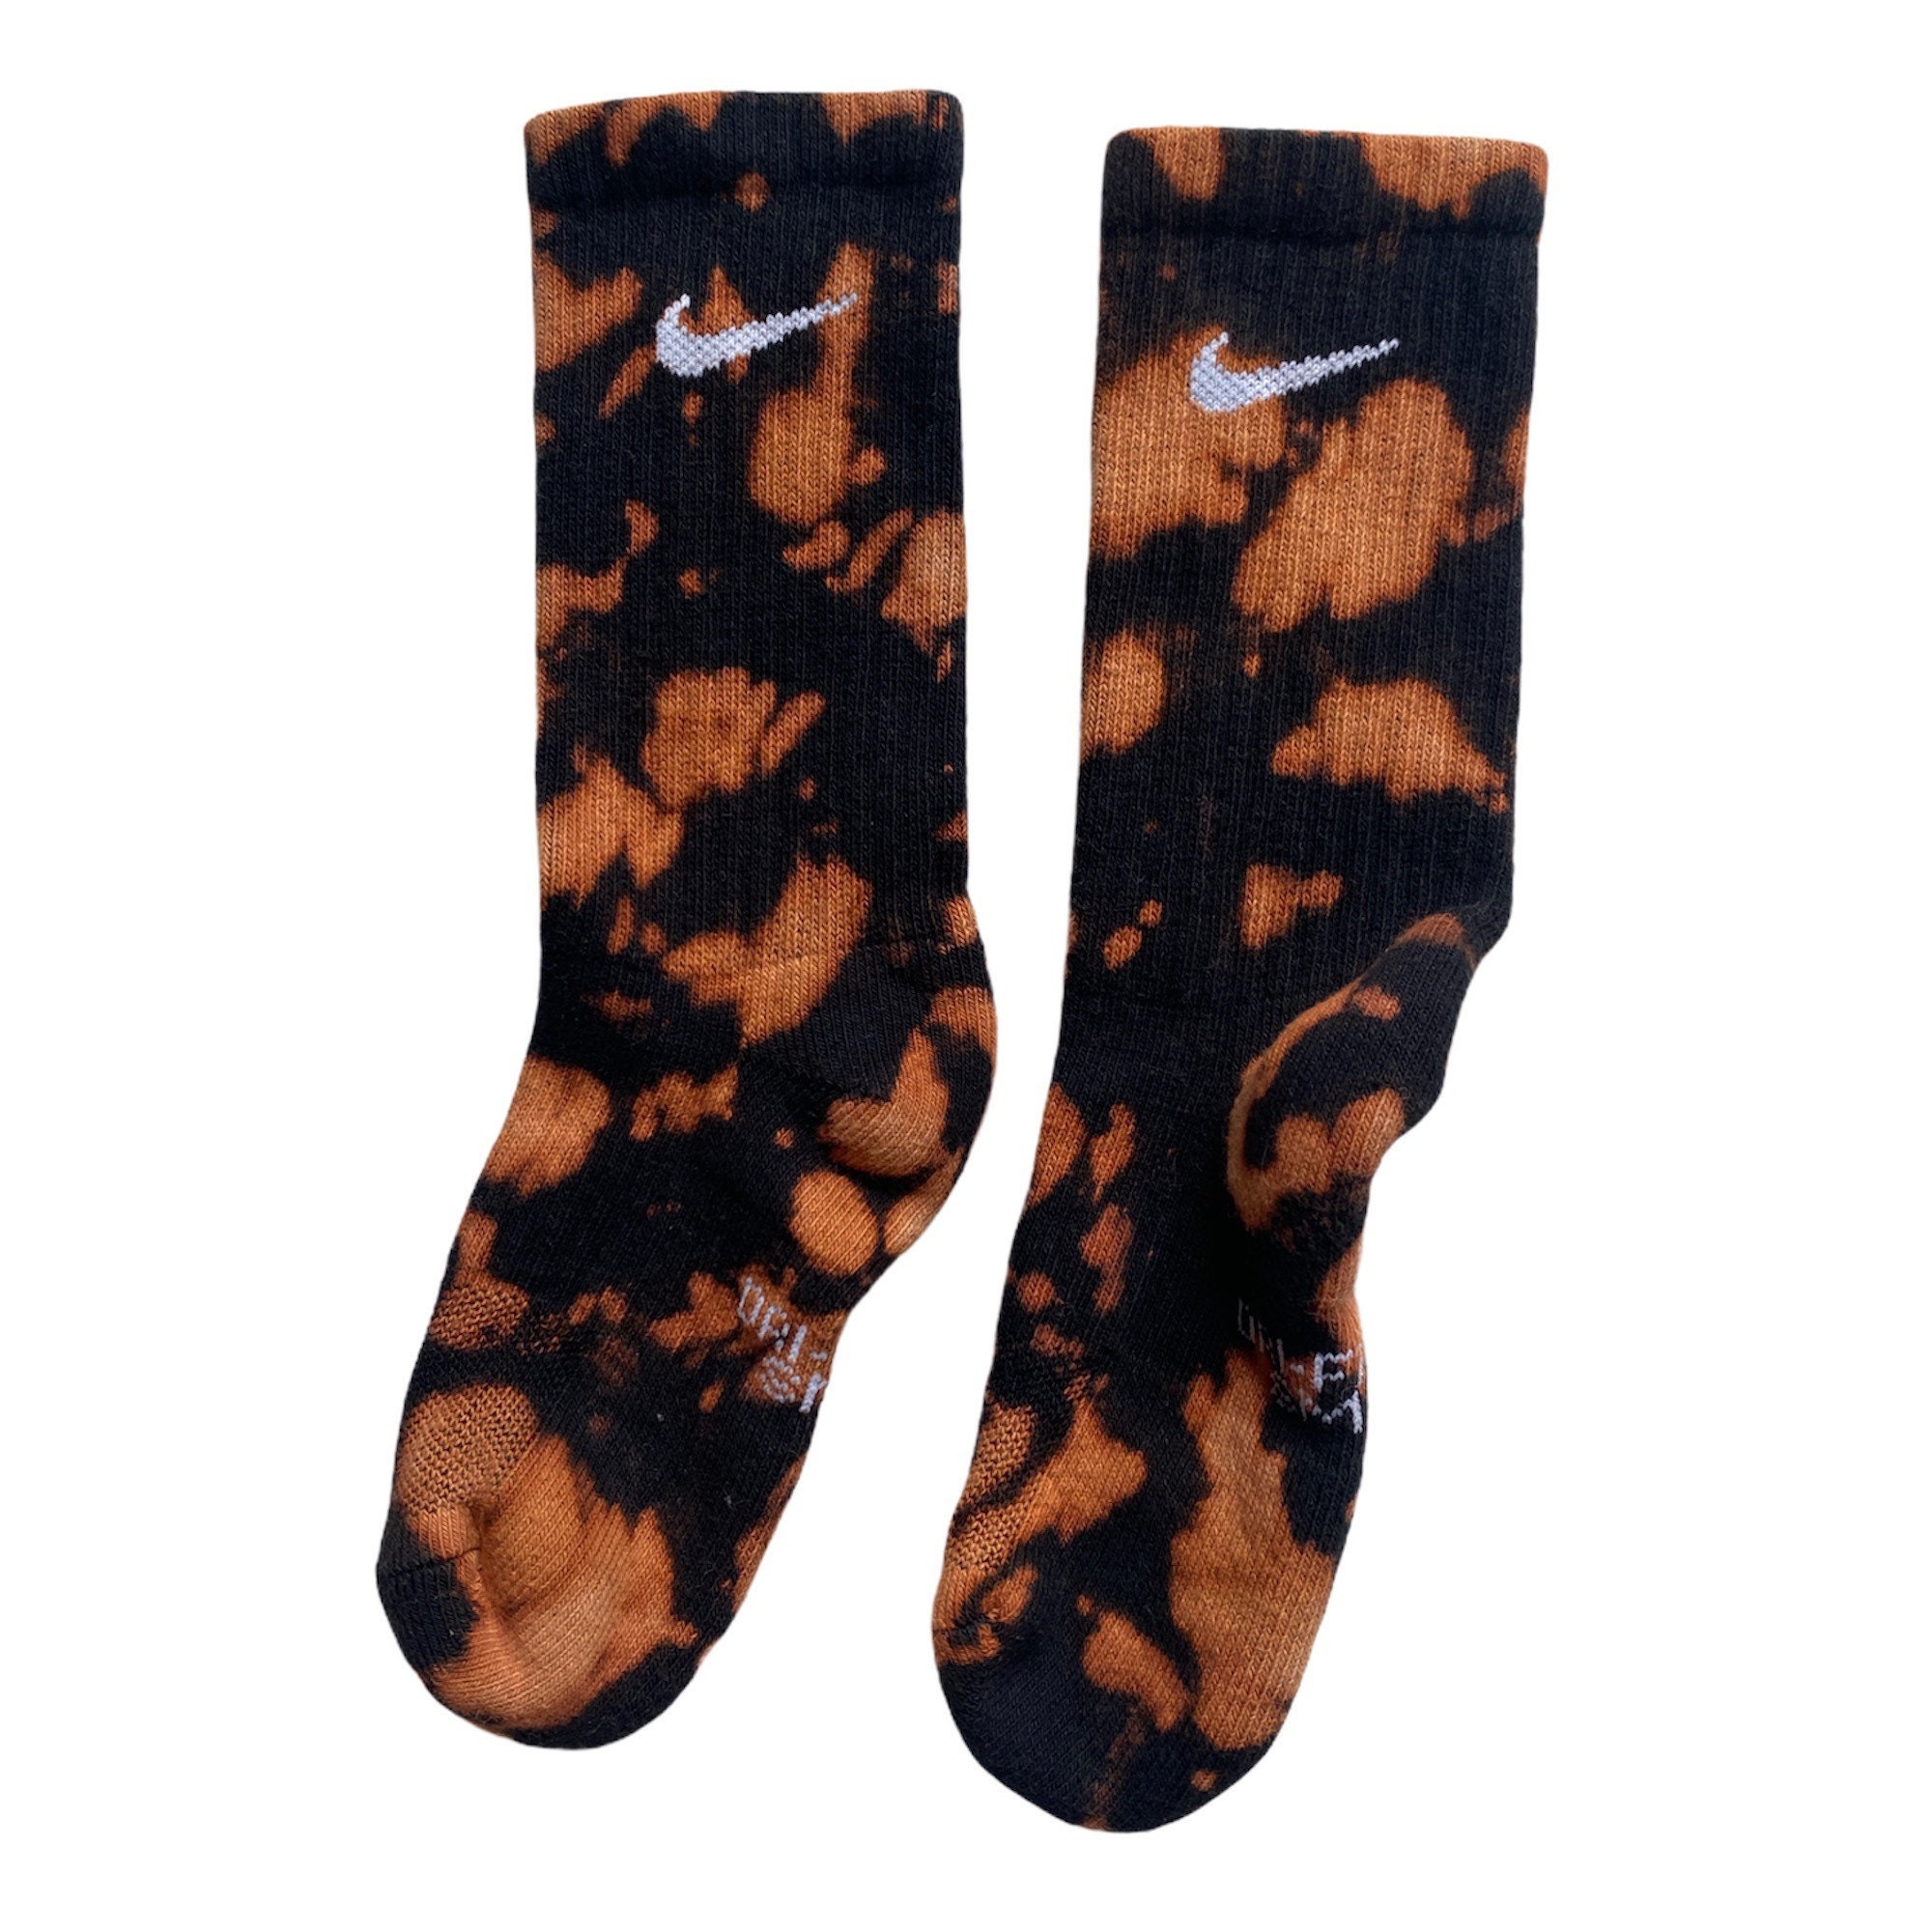 Black Bleach Dye Swoosh Nike Socks Gift for Him and Her Gift - Etsy